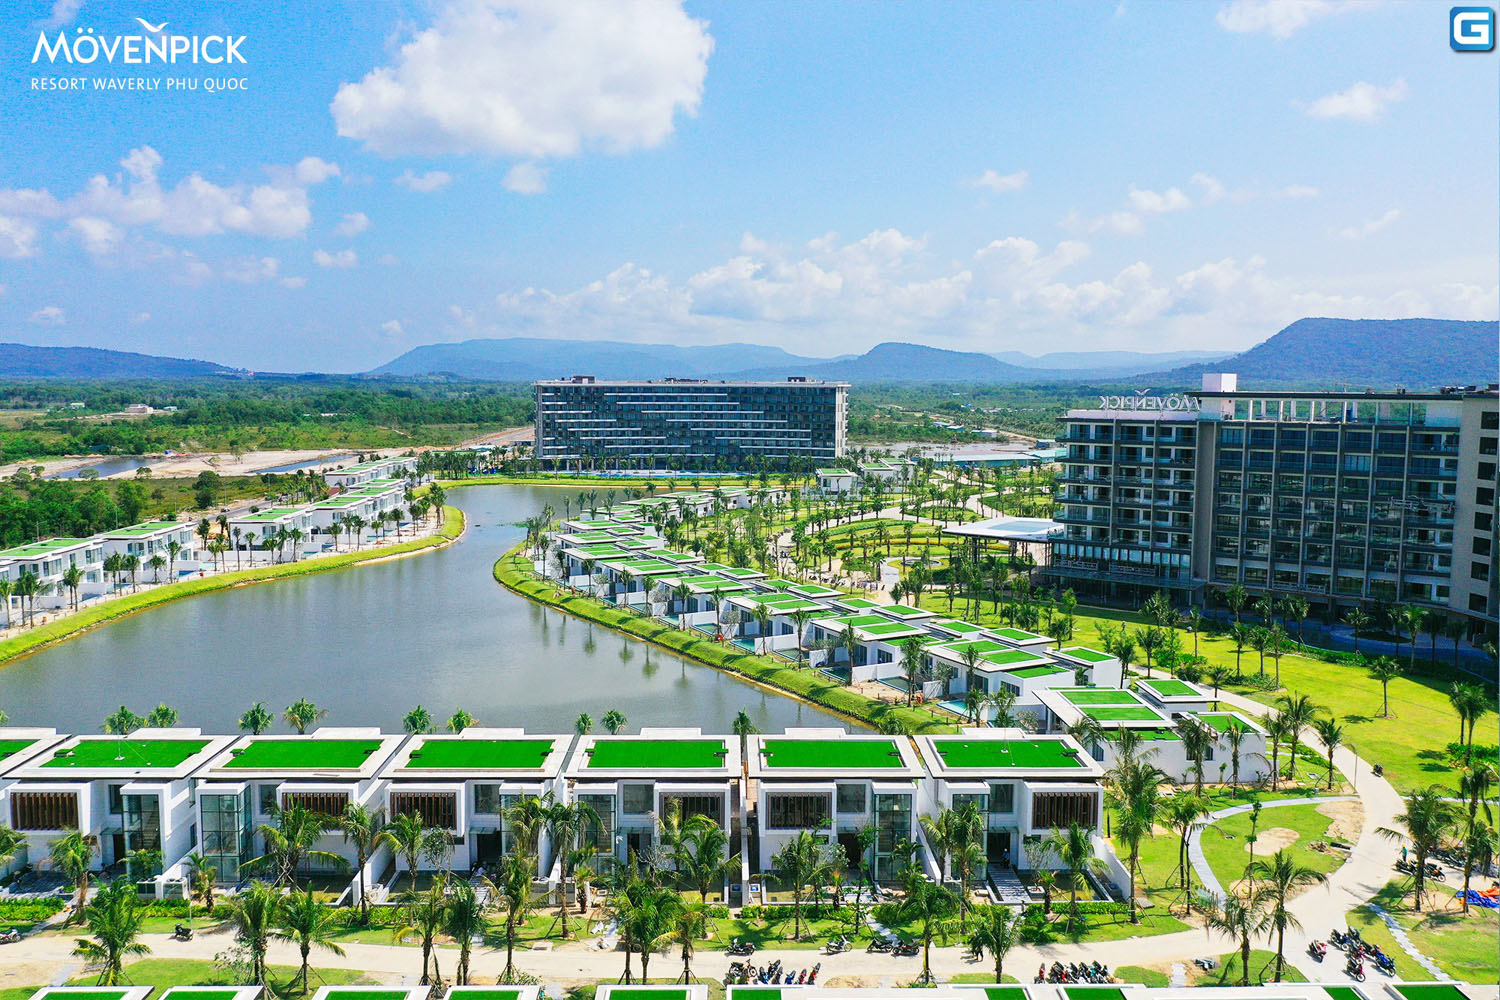 dự án Movenpick Resort Waverly Phú Quốc